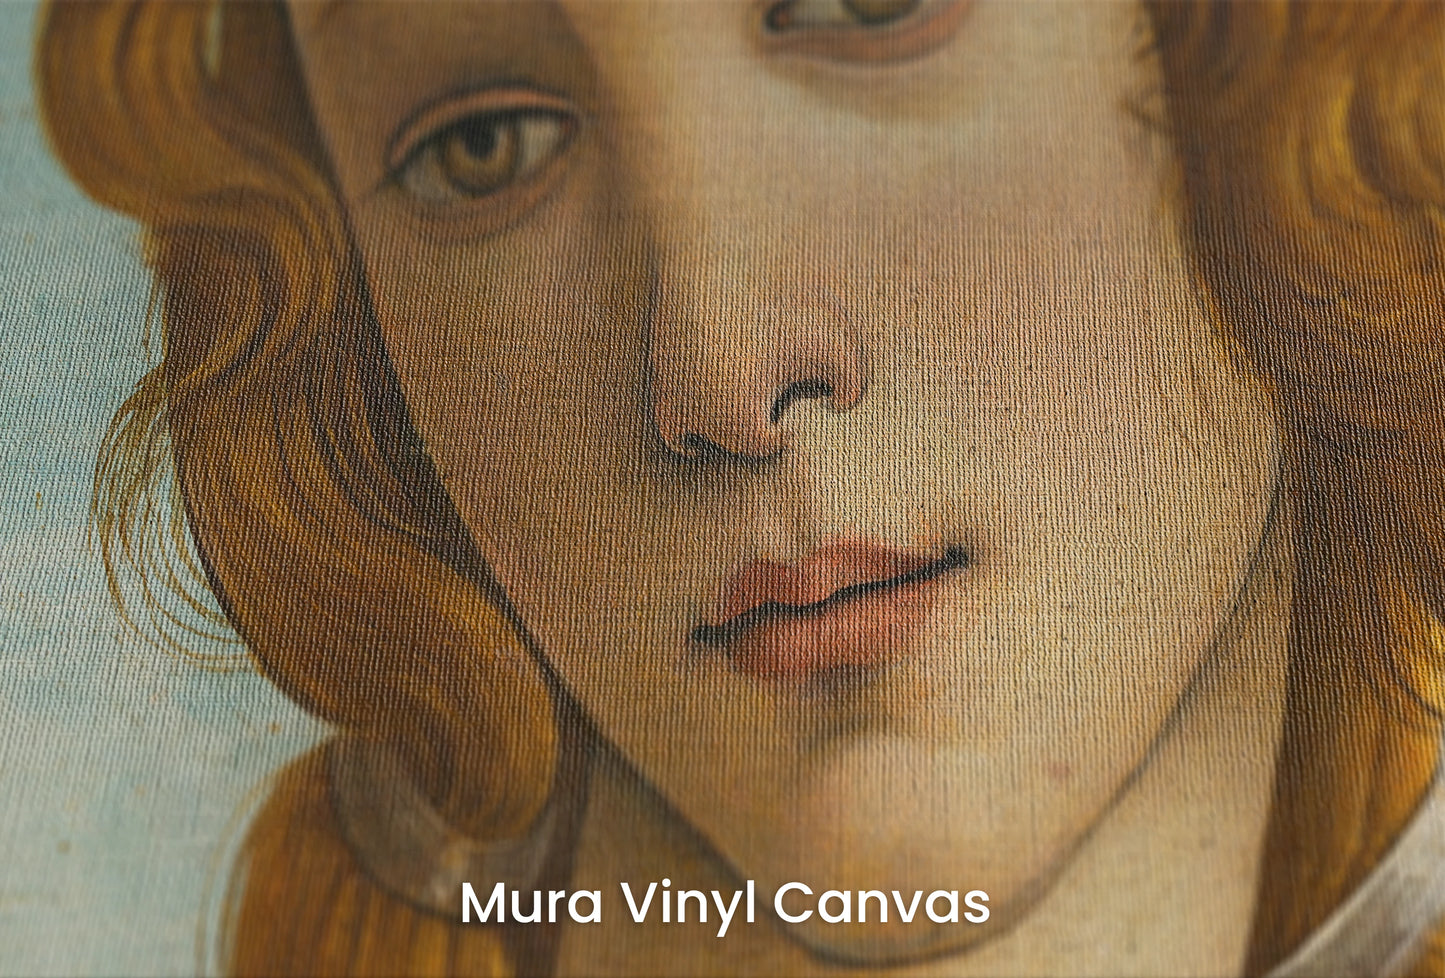 Reprodukcja 'Narodzin Wenus' autorstwa Sandro Botticellego w ultrawysokiej rozdzielczości 37740 x 23701 pikseli, przedstawiająca Wenus stojącą na muszli, otoczoną przez postacie i roślinność - wycinek na podłożu  Mura Vinyl Canvas - o strukturze płótna malarskiego.